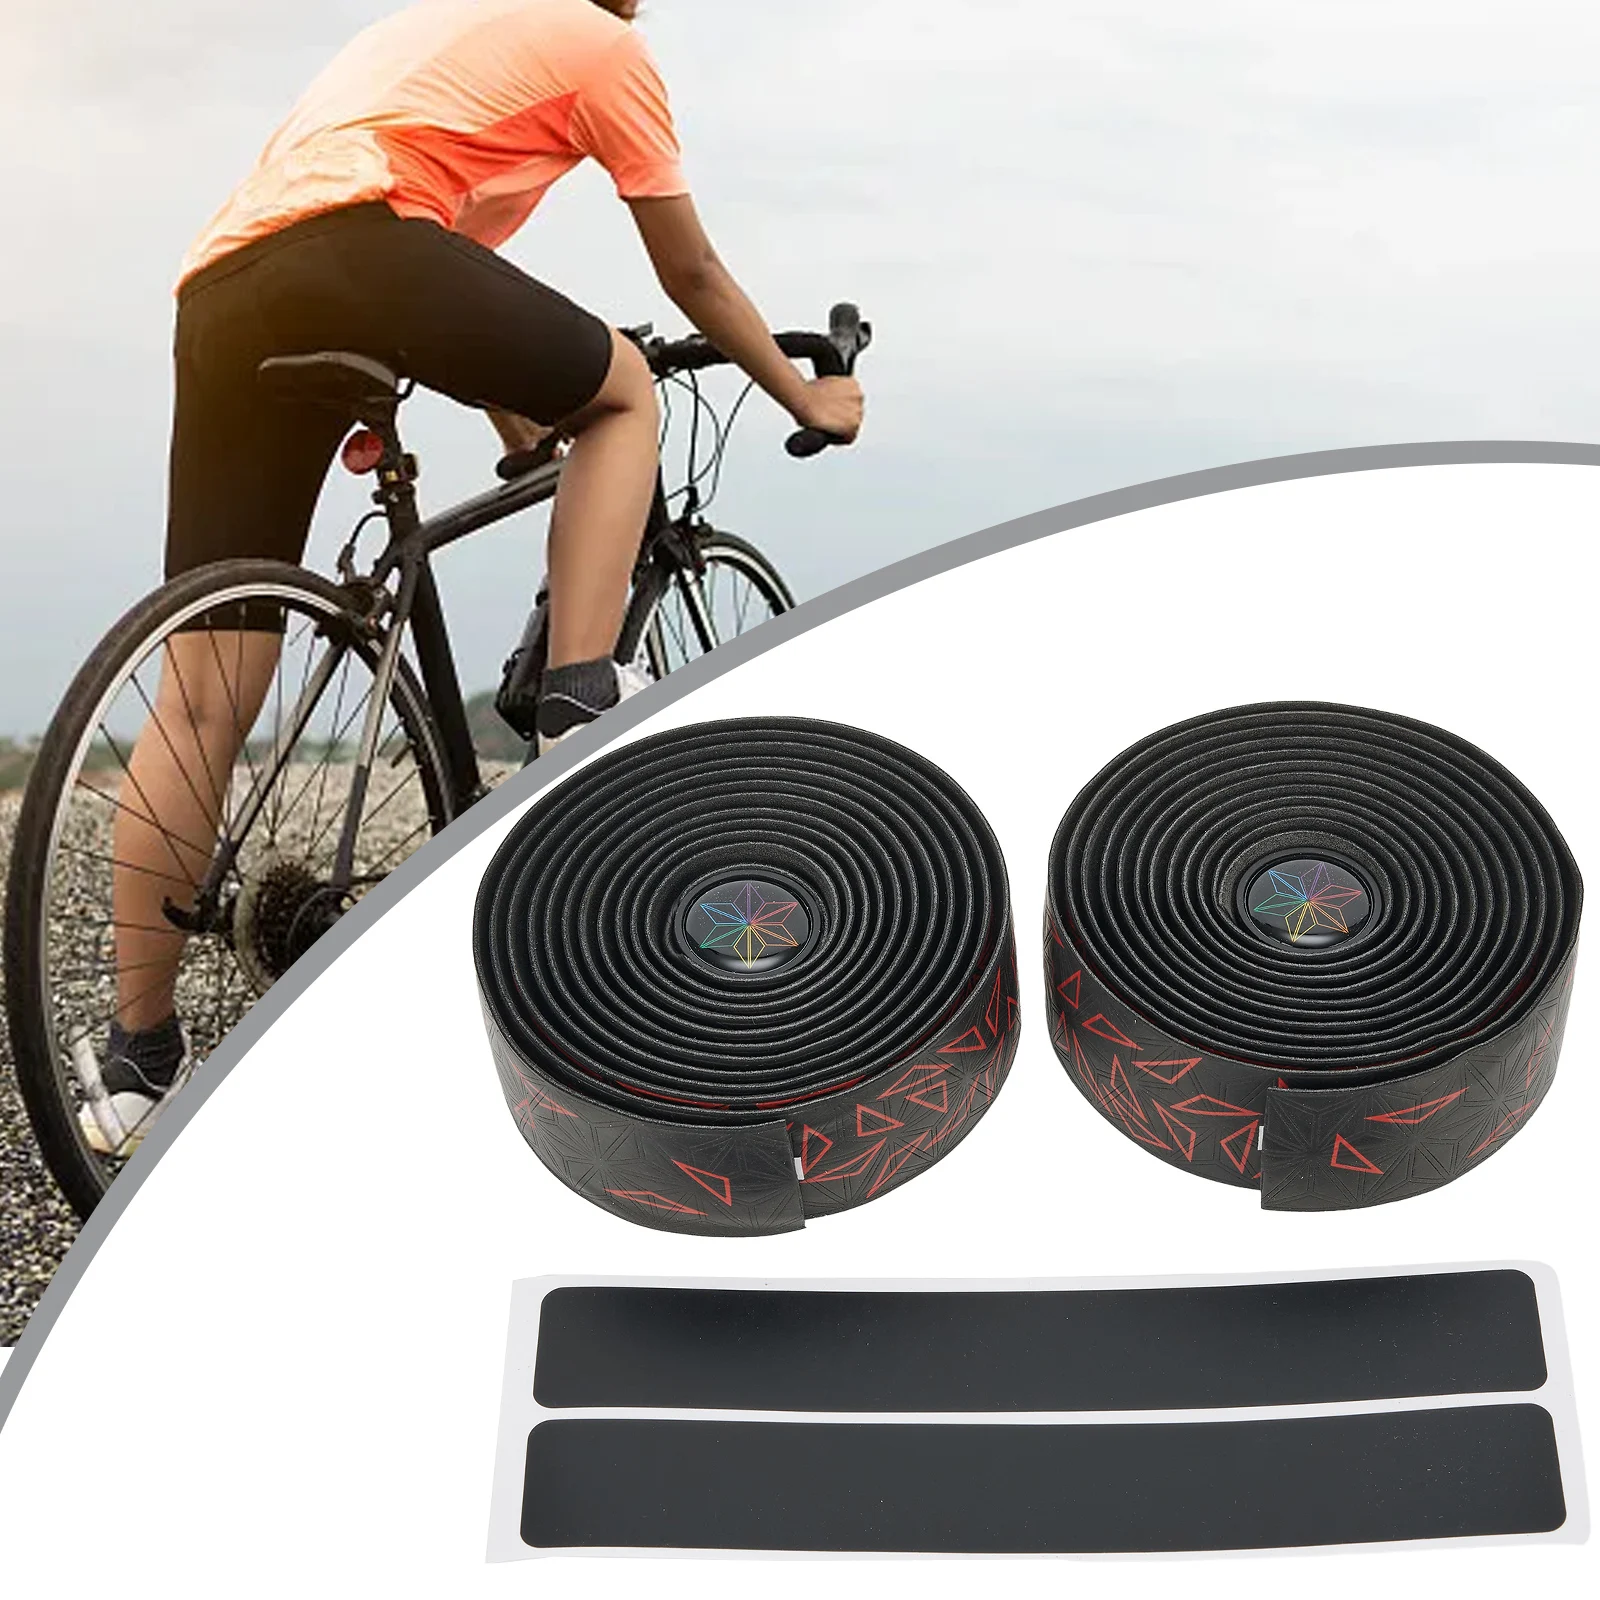 

Противоскользящие ленты для руля велосипеда, ремень для руля горного и дорожного велосипеда, оболочки с заглушками для конца руля велосипеда